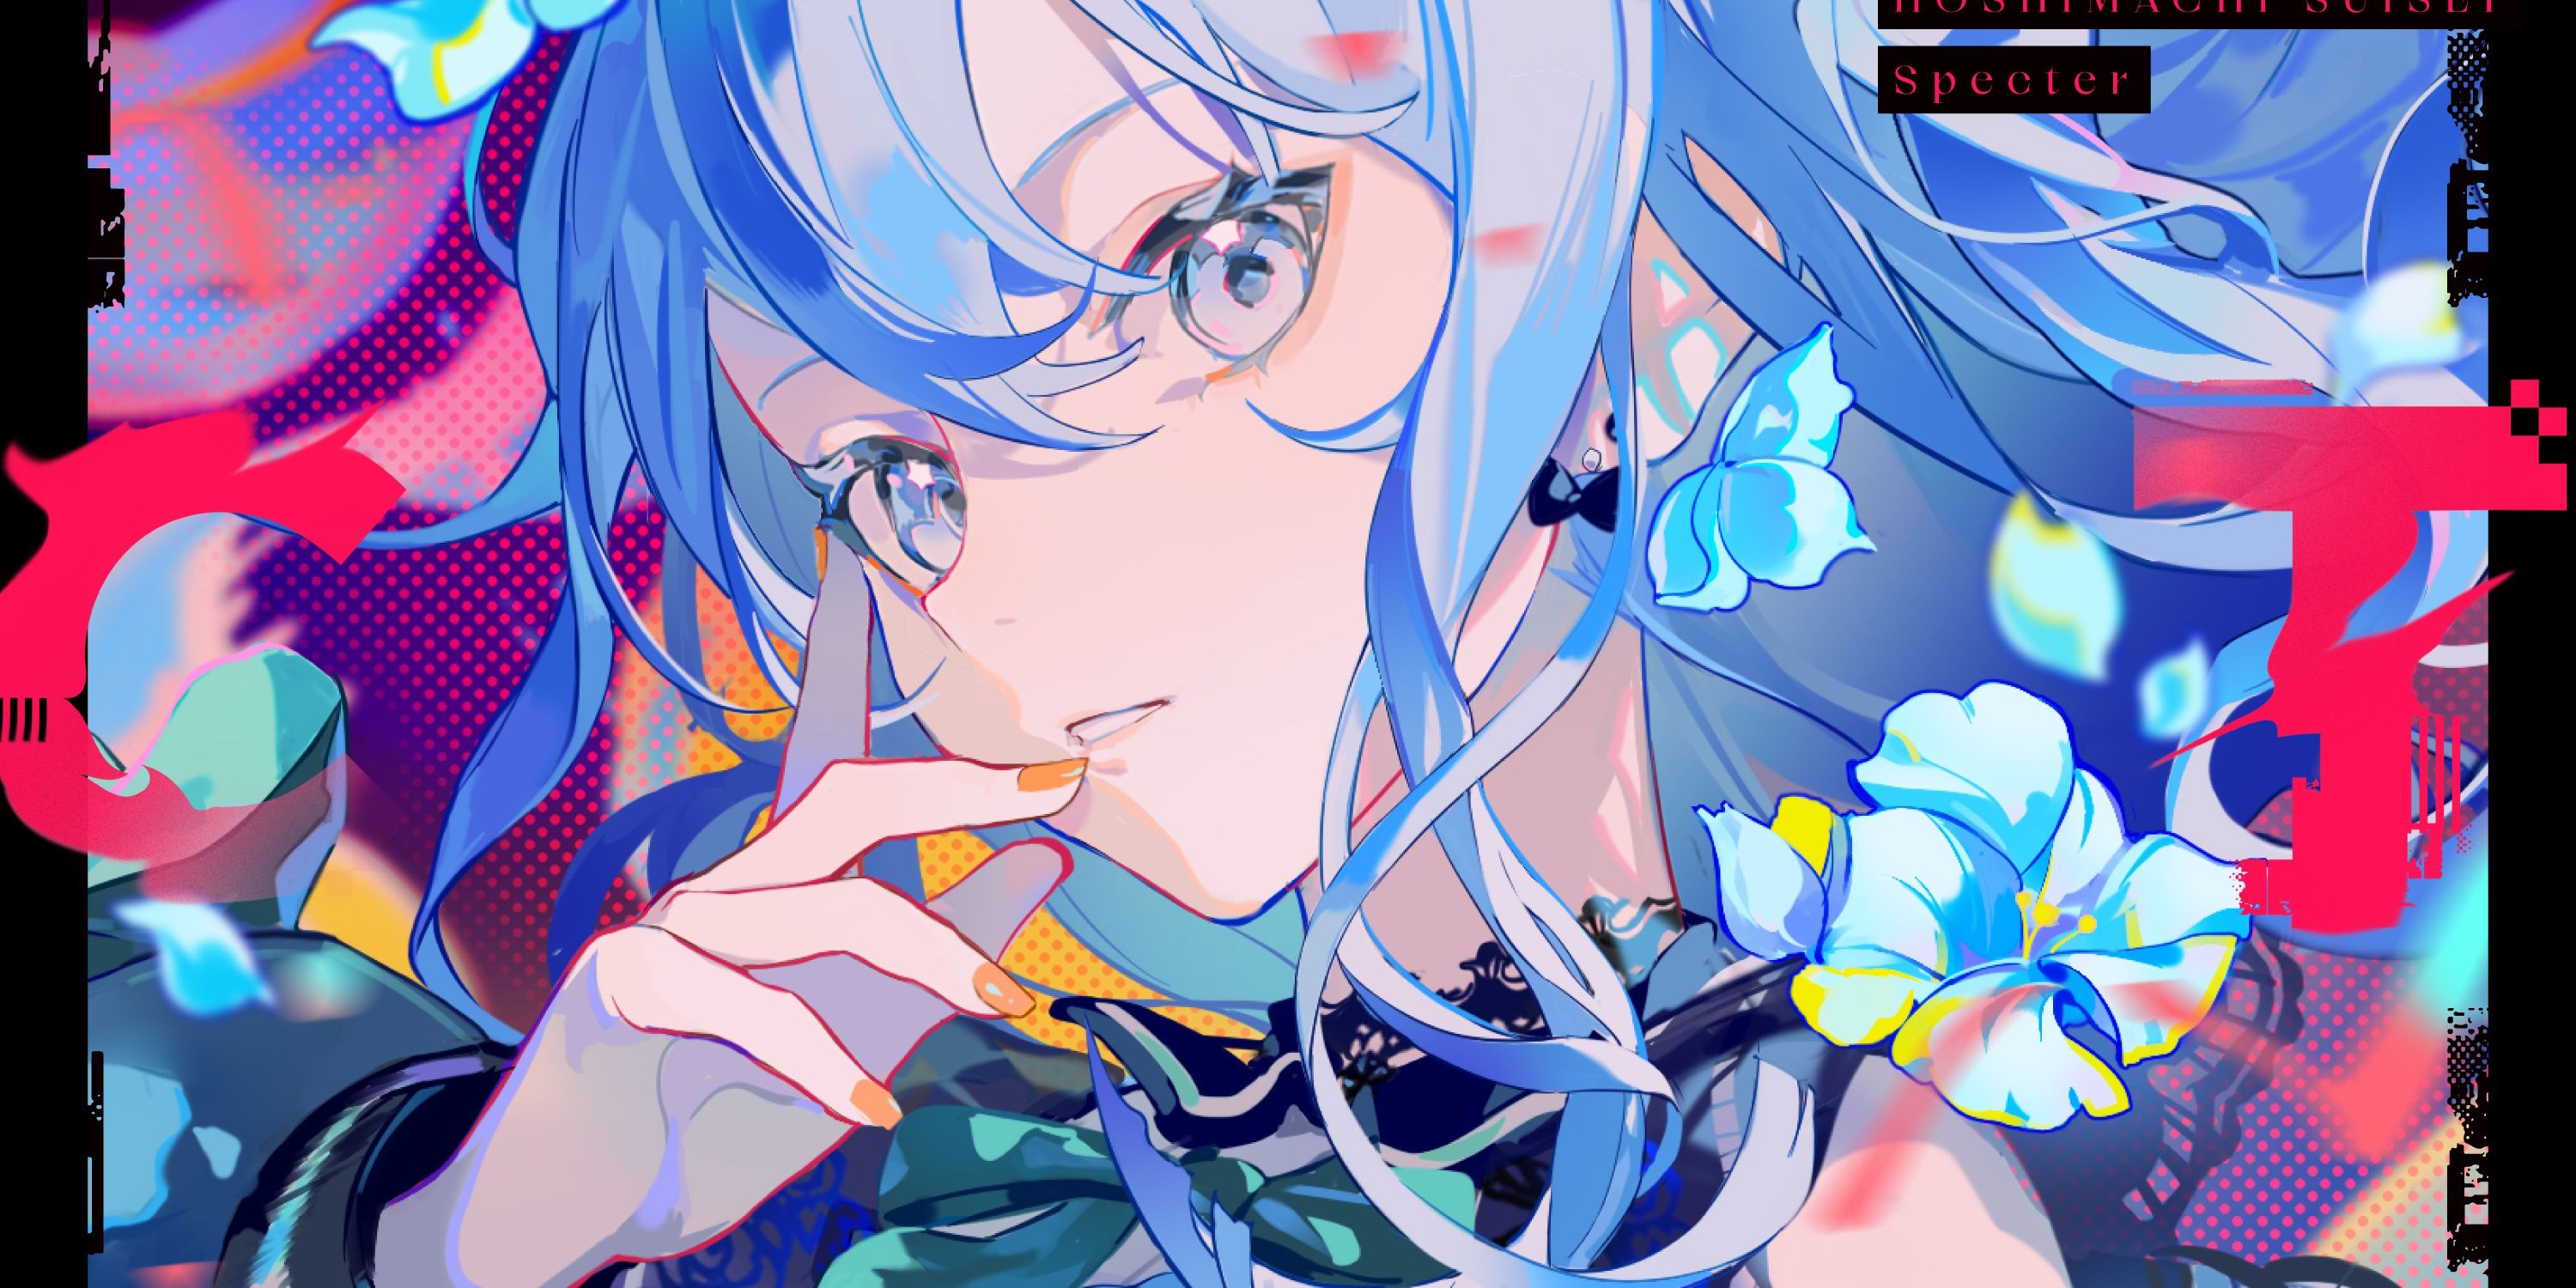 Imagem retirada do álbum de Suisei, "Espectro"retratando-a cercada por flores azuis enquanto ela leva a mão ao rosto e olha para a tela.